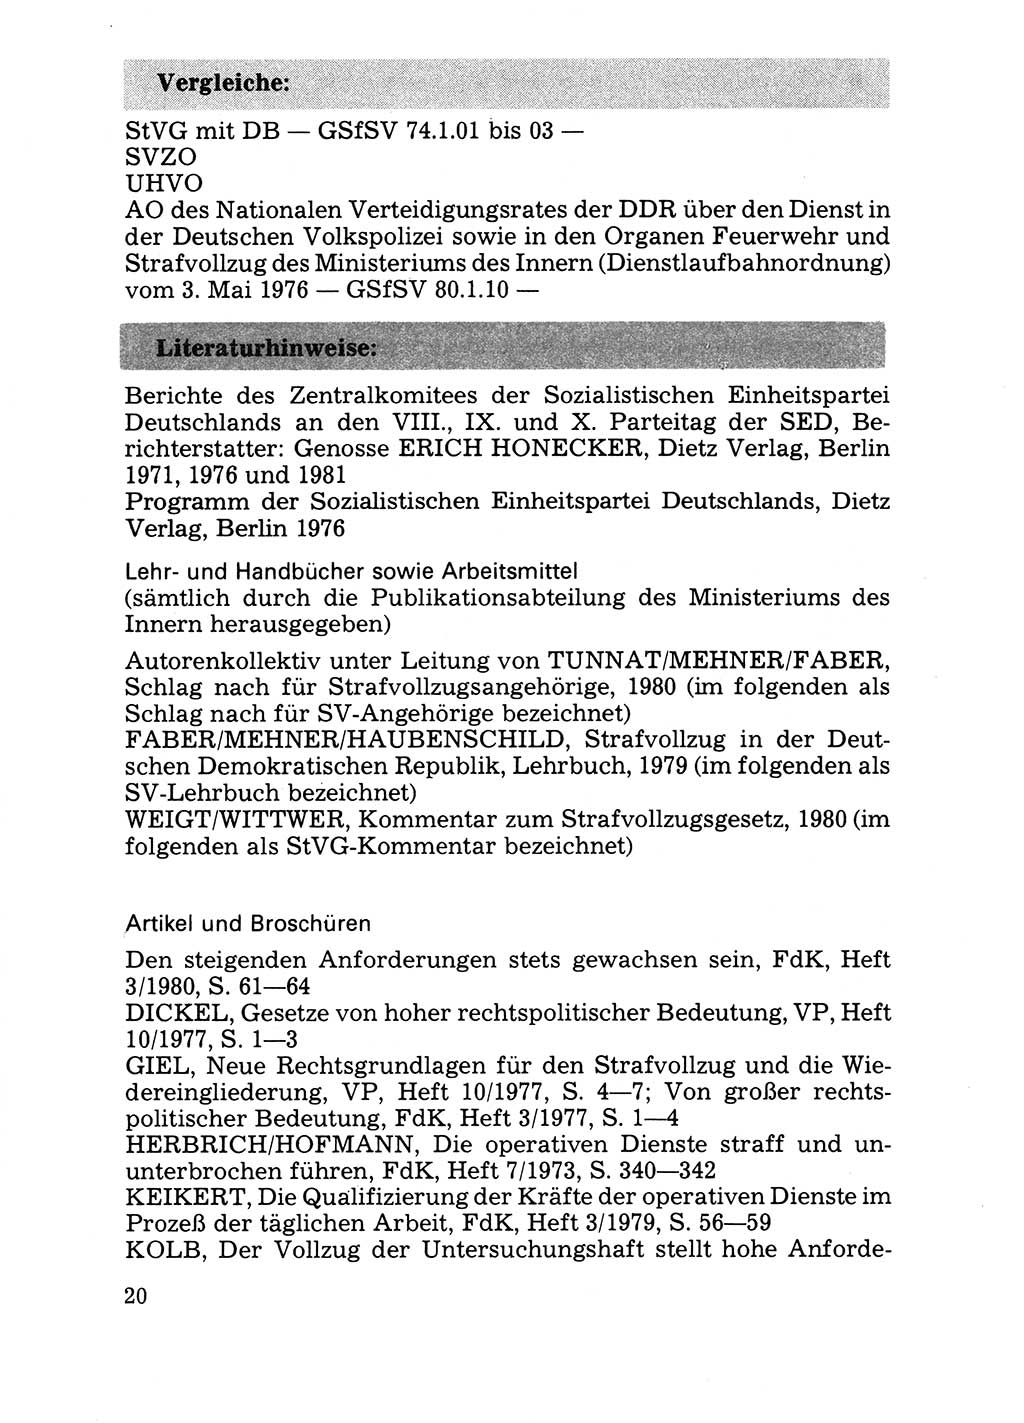 Handbuch für operative Dienste, Abteilung Strafvollzug (SV) [Ministerium des Innern (MdI) Deutsche Demokratische Republik (DDR)] 1981, Seite 20 (Hb. op. D. Abt. SV MdI DDR 1981, S. 20)